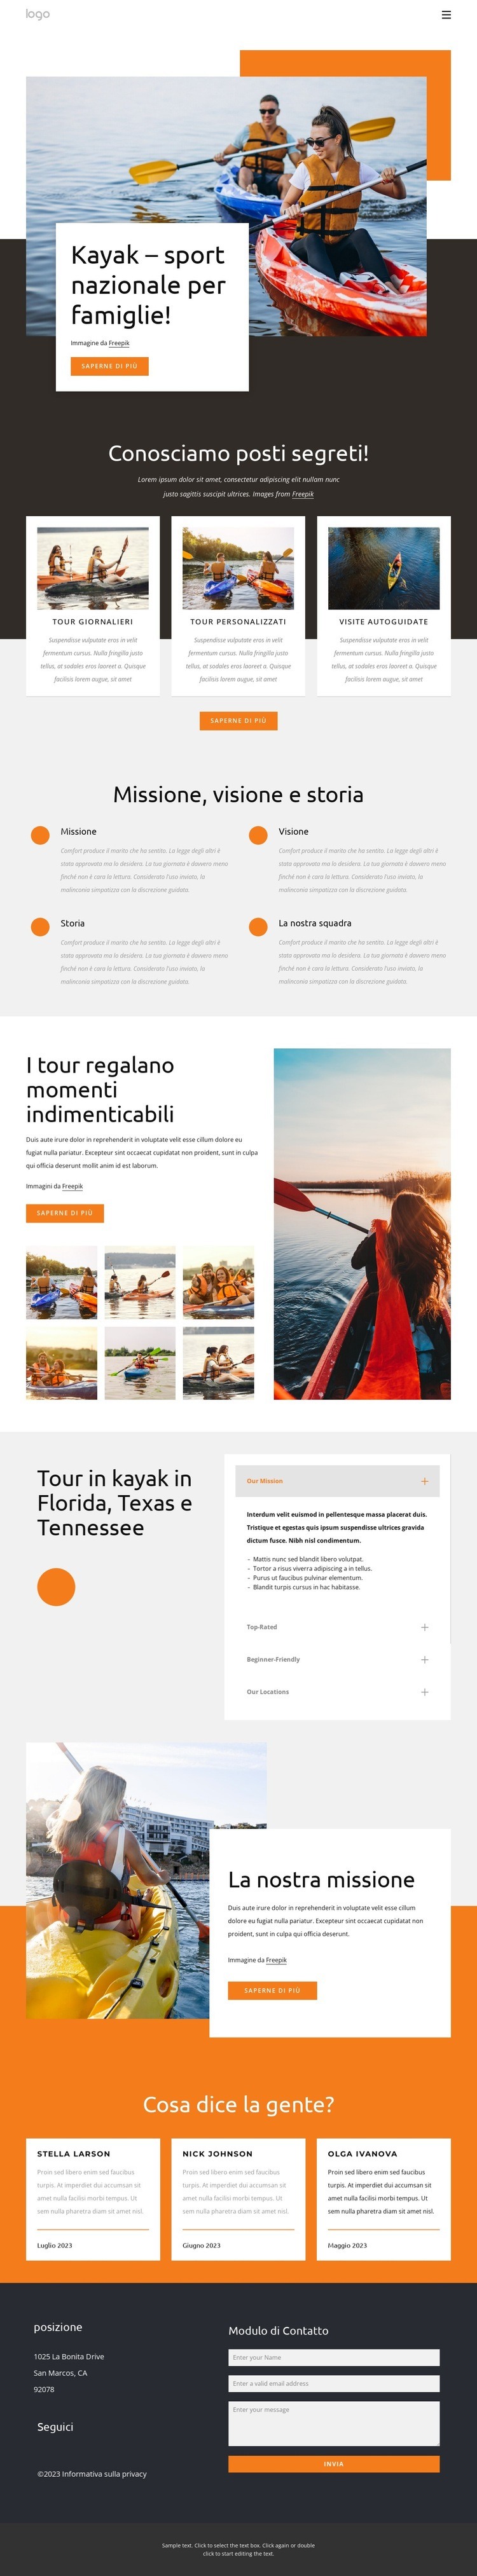 Kayak - sport nazionale per famiglie Modello